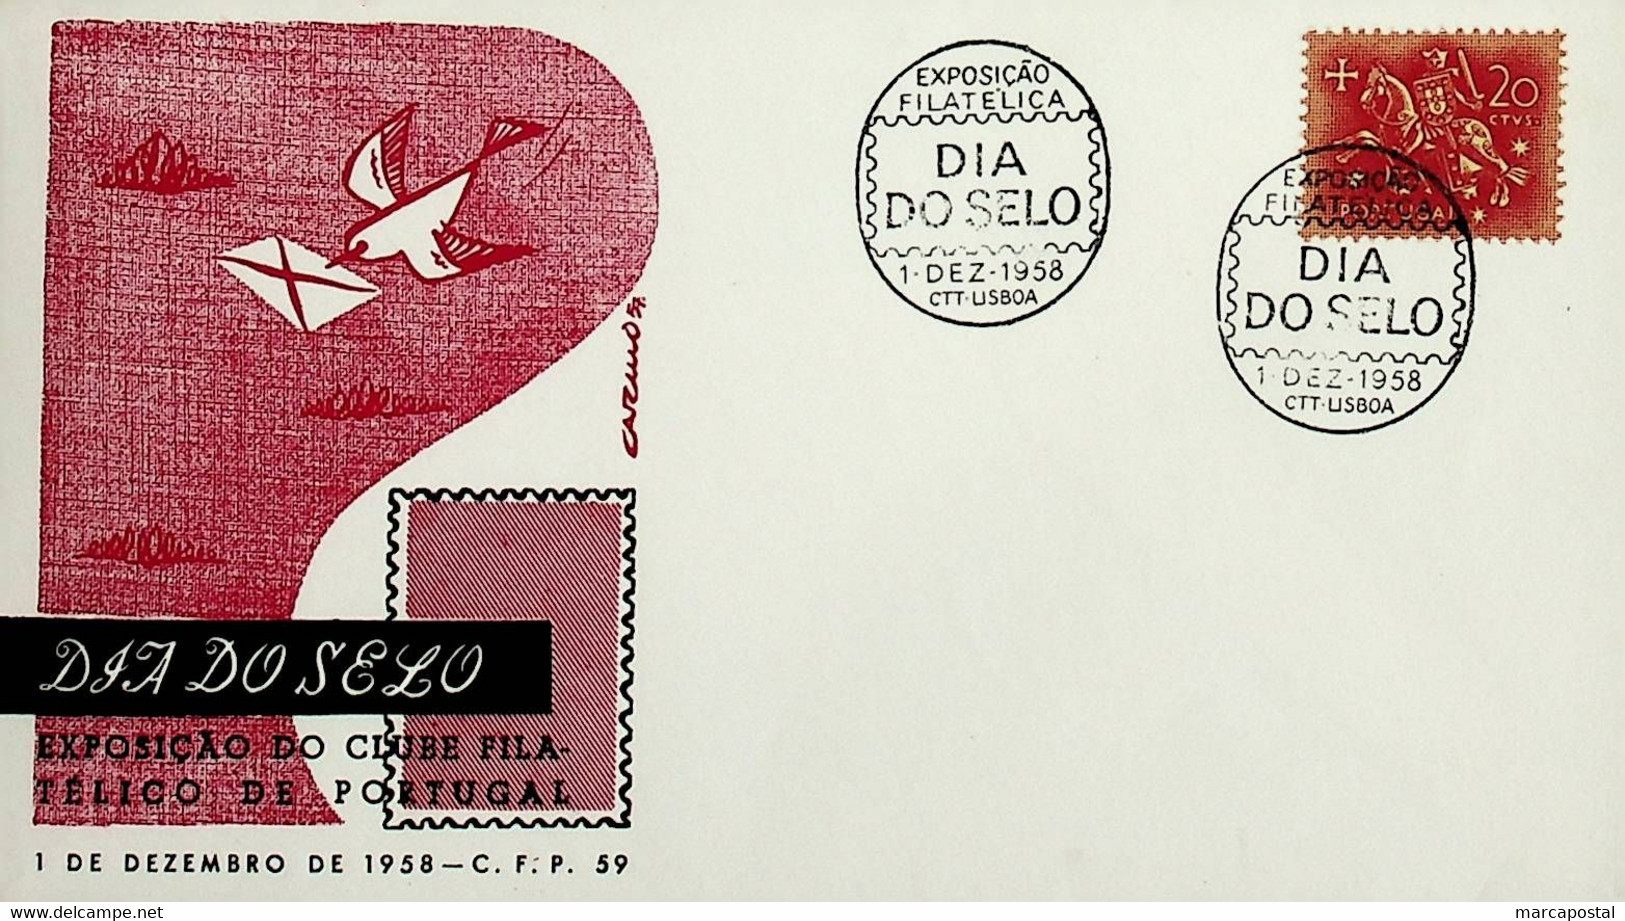 1958. Portugal. Dia Do Selo - Exposição Filatélica - Stamp's Day